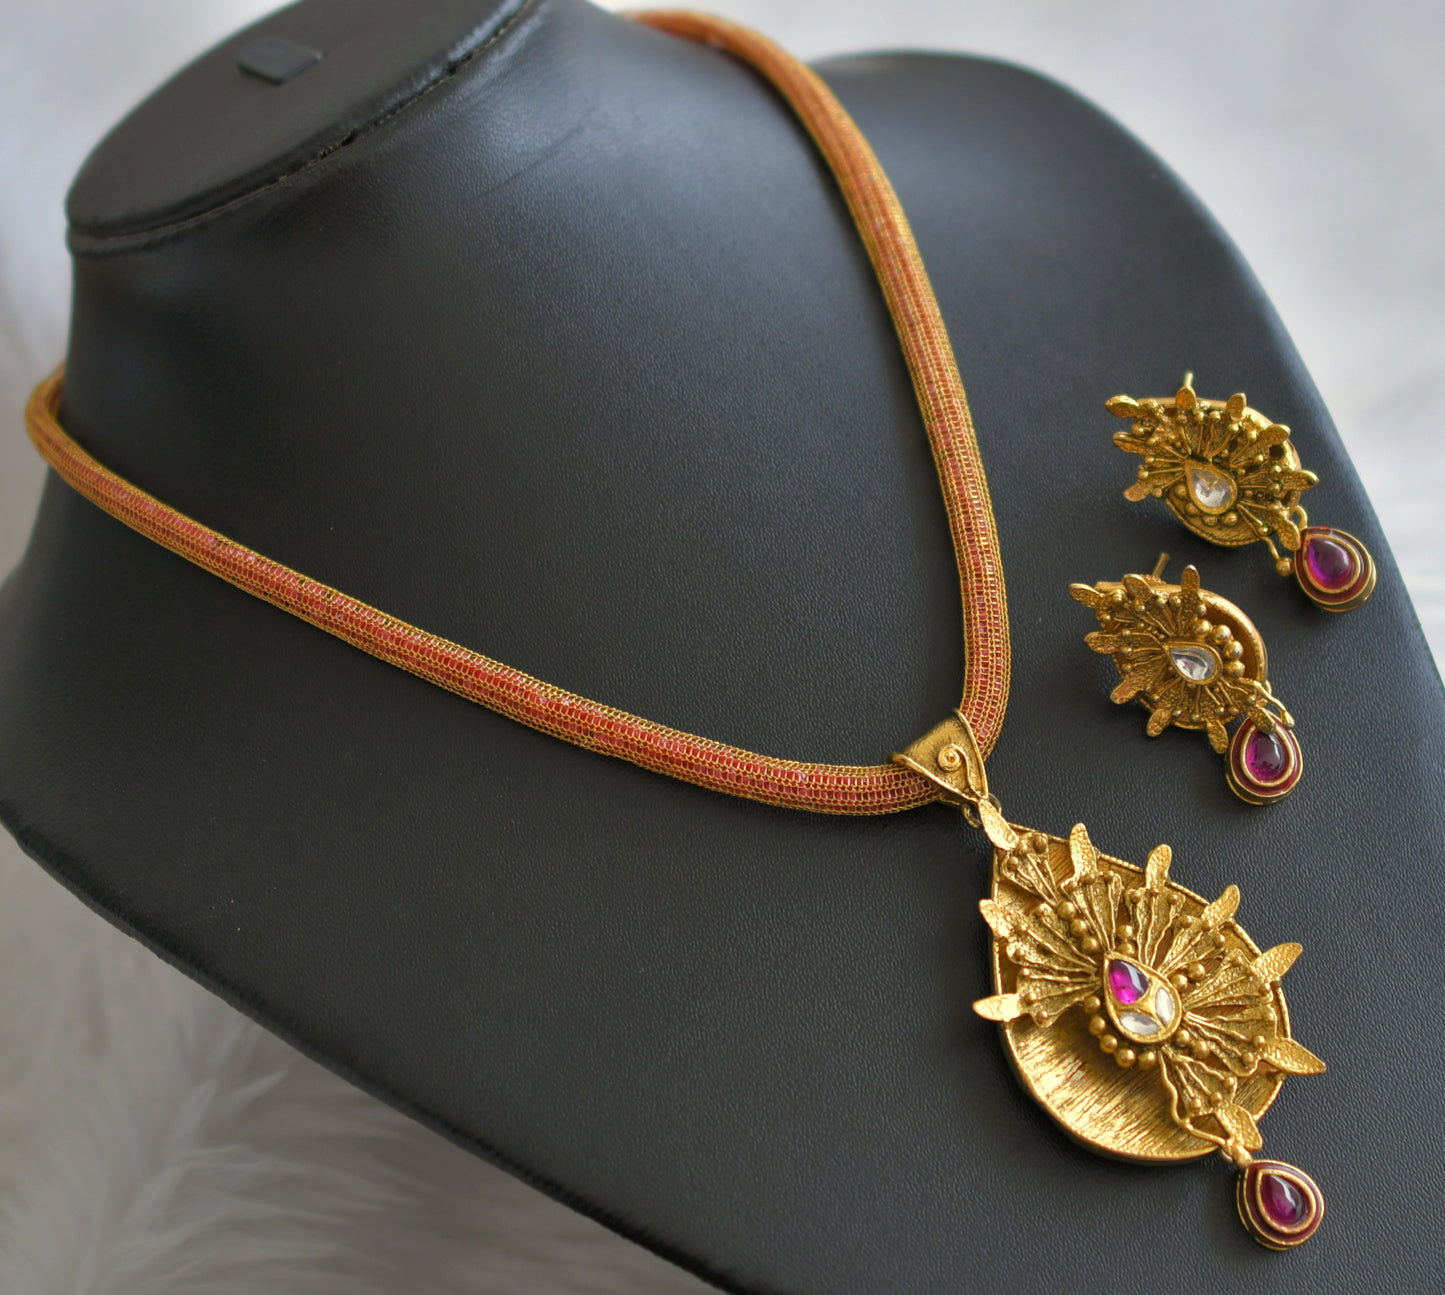 Antique gold tone pink cz chain replica necklace set dj-44240